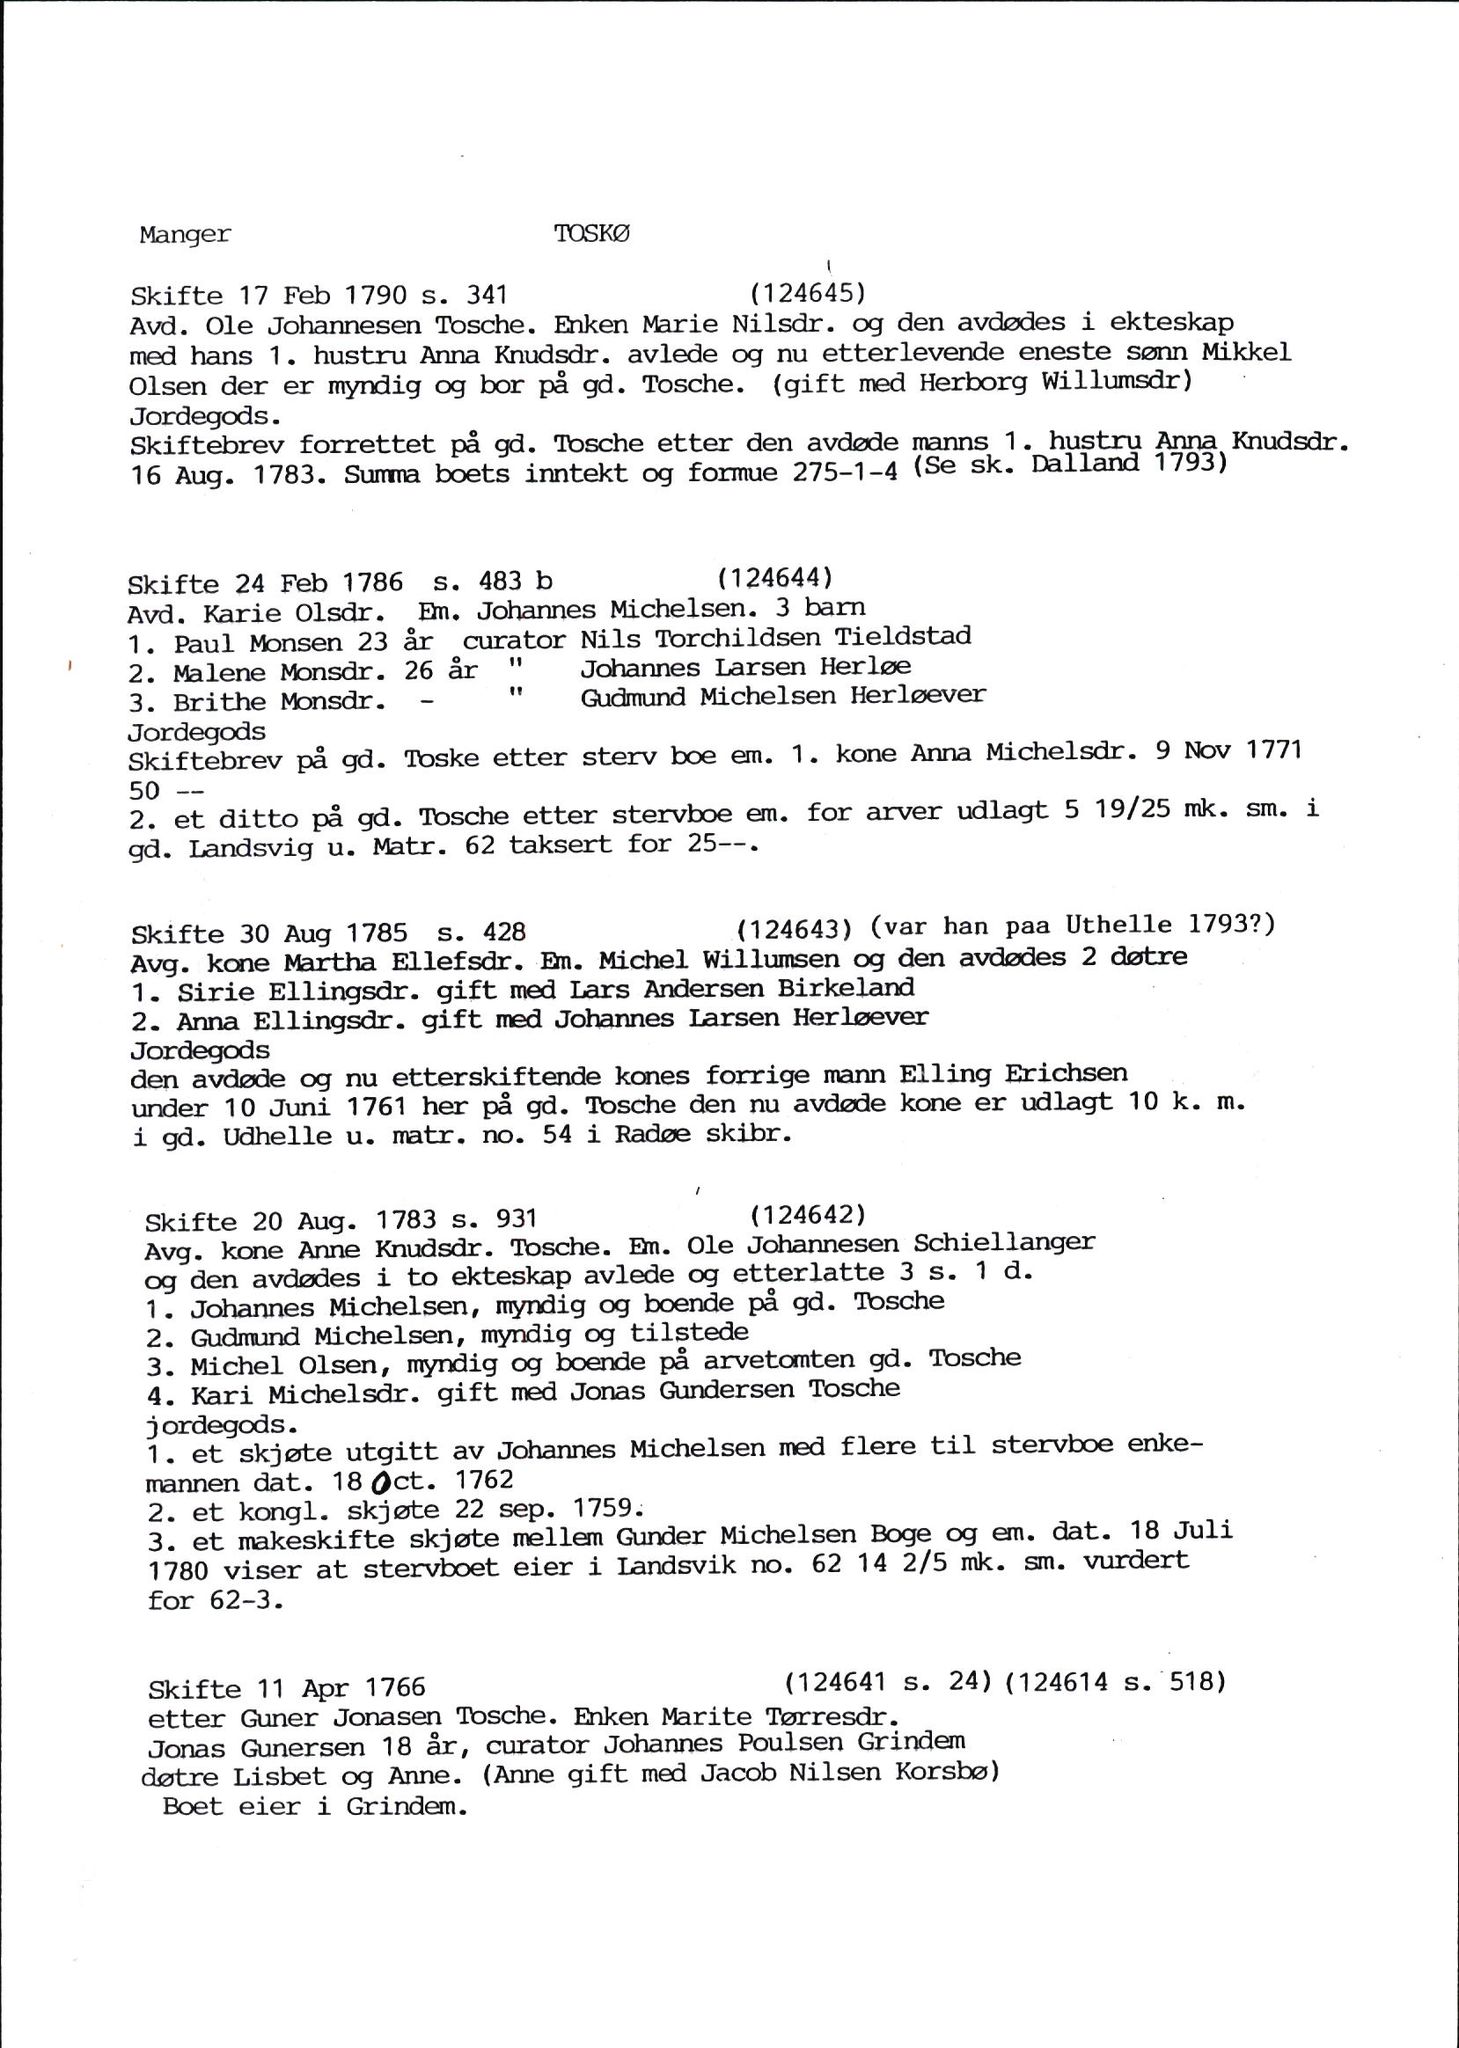 Samling av fulltekstavskrifter, SAB/FULLTEKST/D/12/0001: Skifter og andre opplysninger fra gårder i Manger prestegjeld (soknene Herdla, Bø, Sæbø og Manger) ca. 1700 - ca. 1800, 1700-1800, p. 56